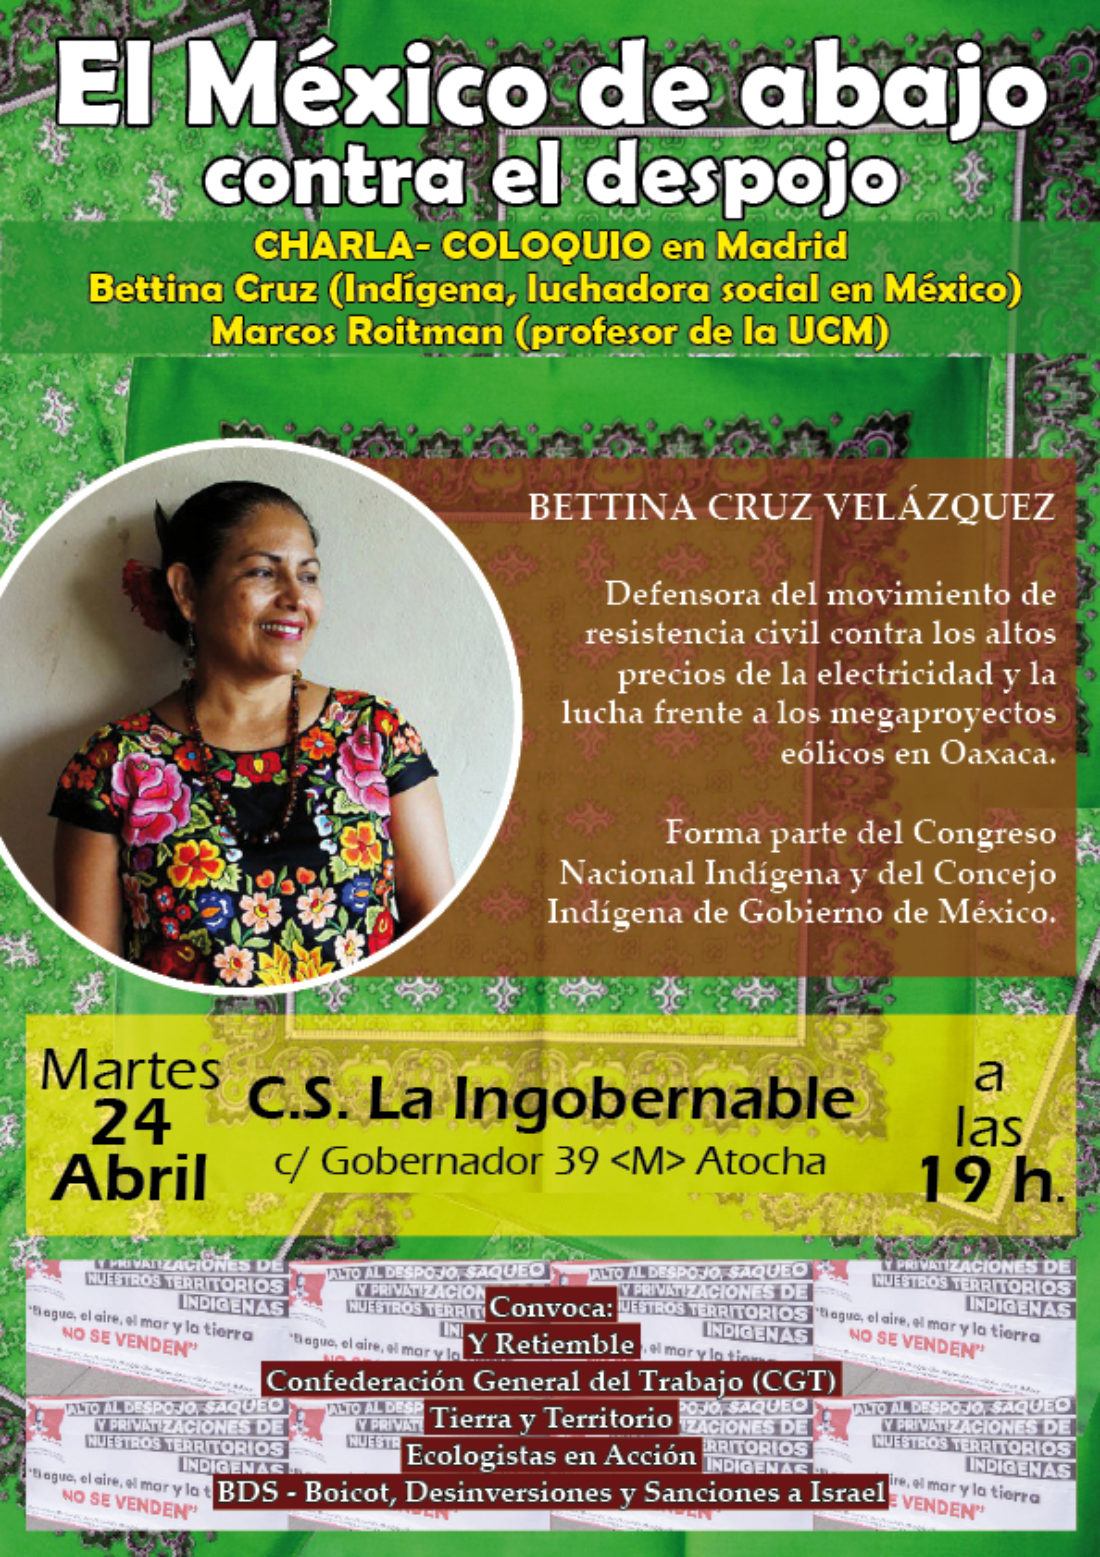 23 y 24-A: Encuentro y charla de Bettina Cruz Velázquez en Madrid